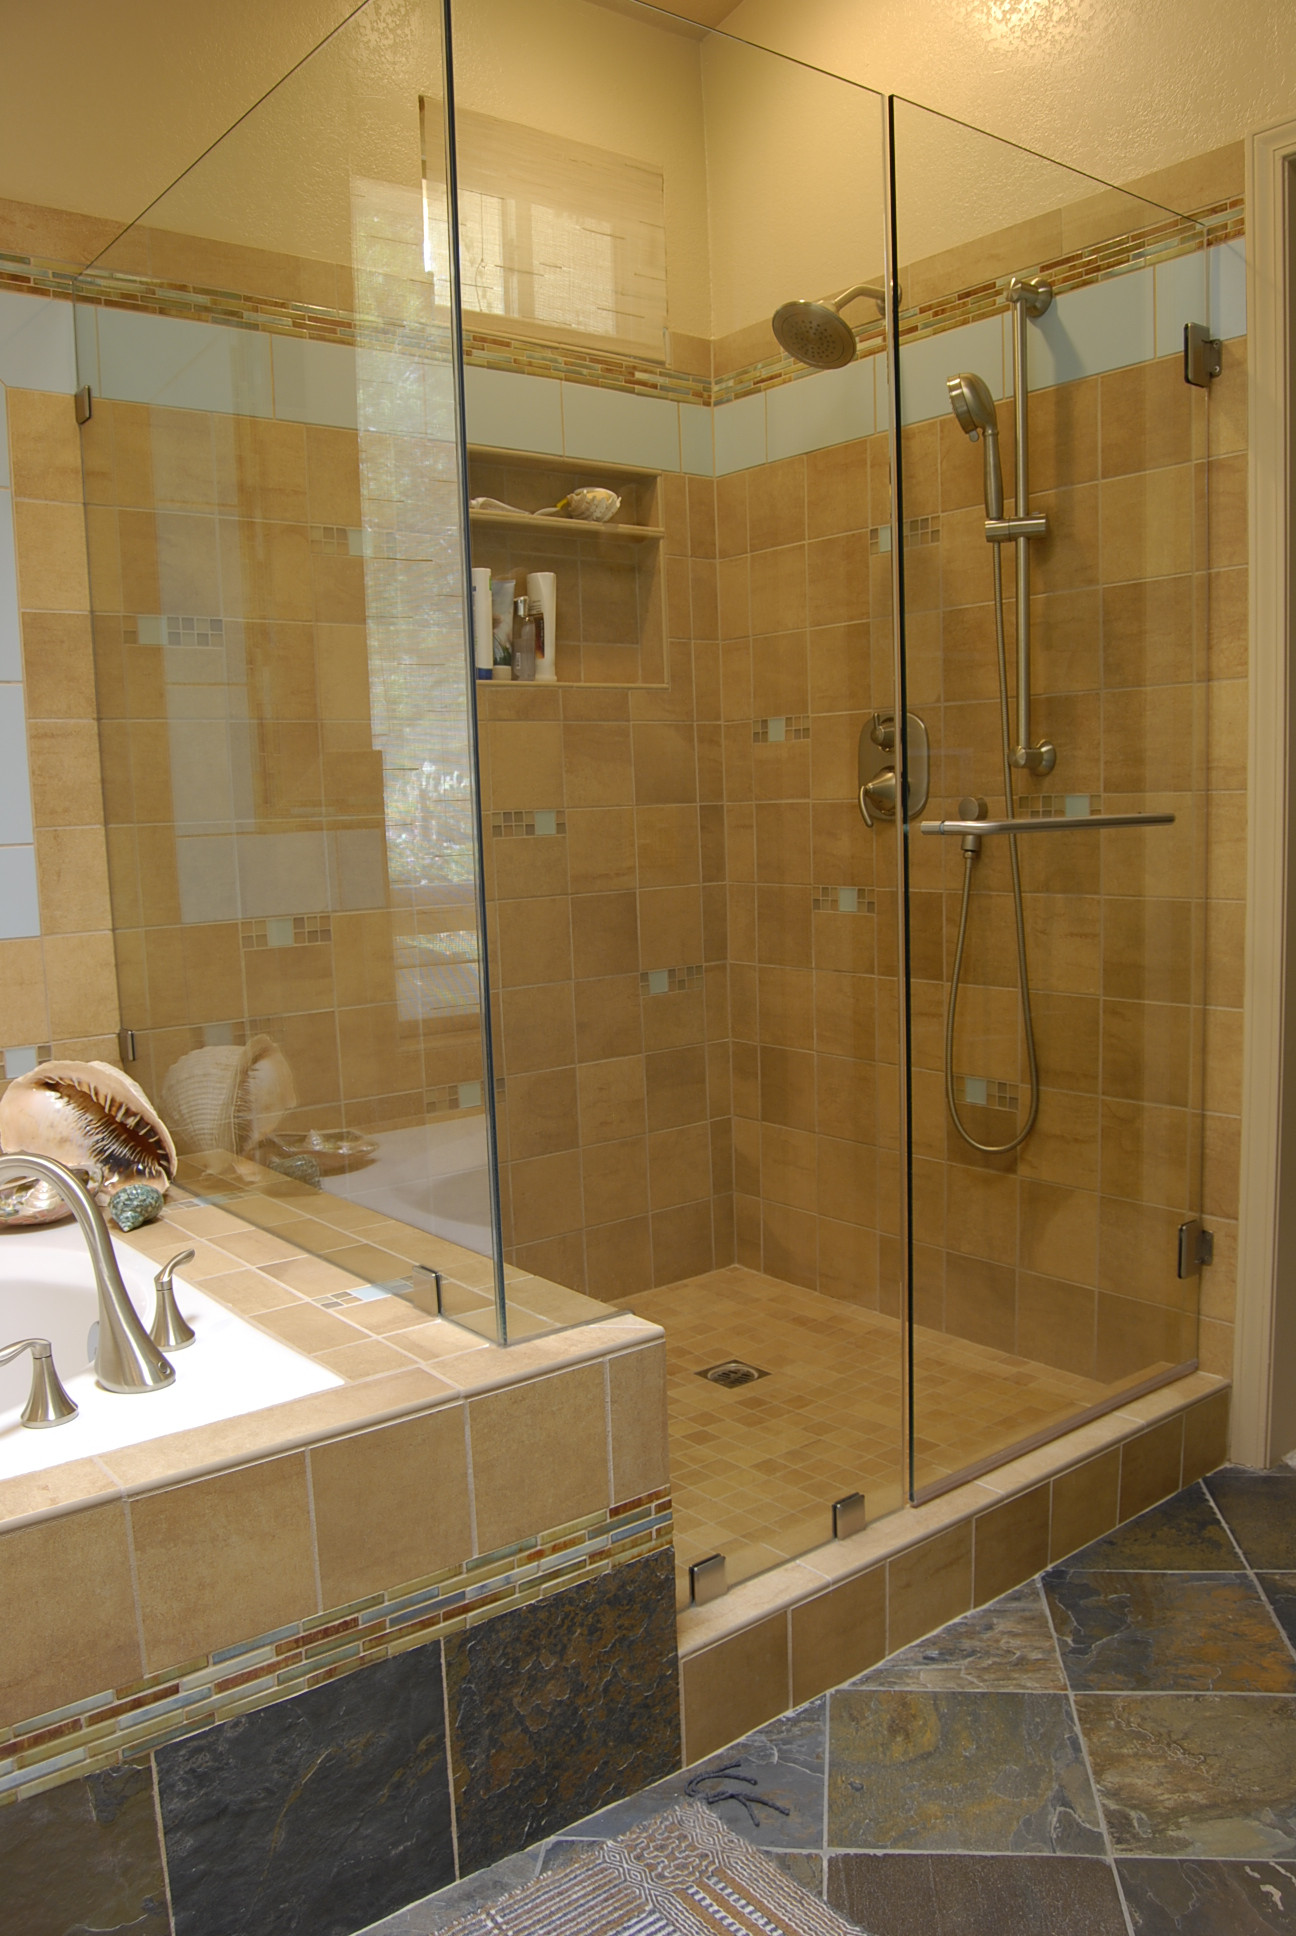 Bathroom Shower Tile Gallery
 Bathroom Upgrade Your Bathroom With Shower Tile Patterns